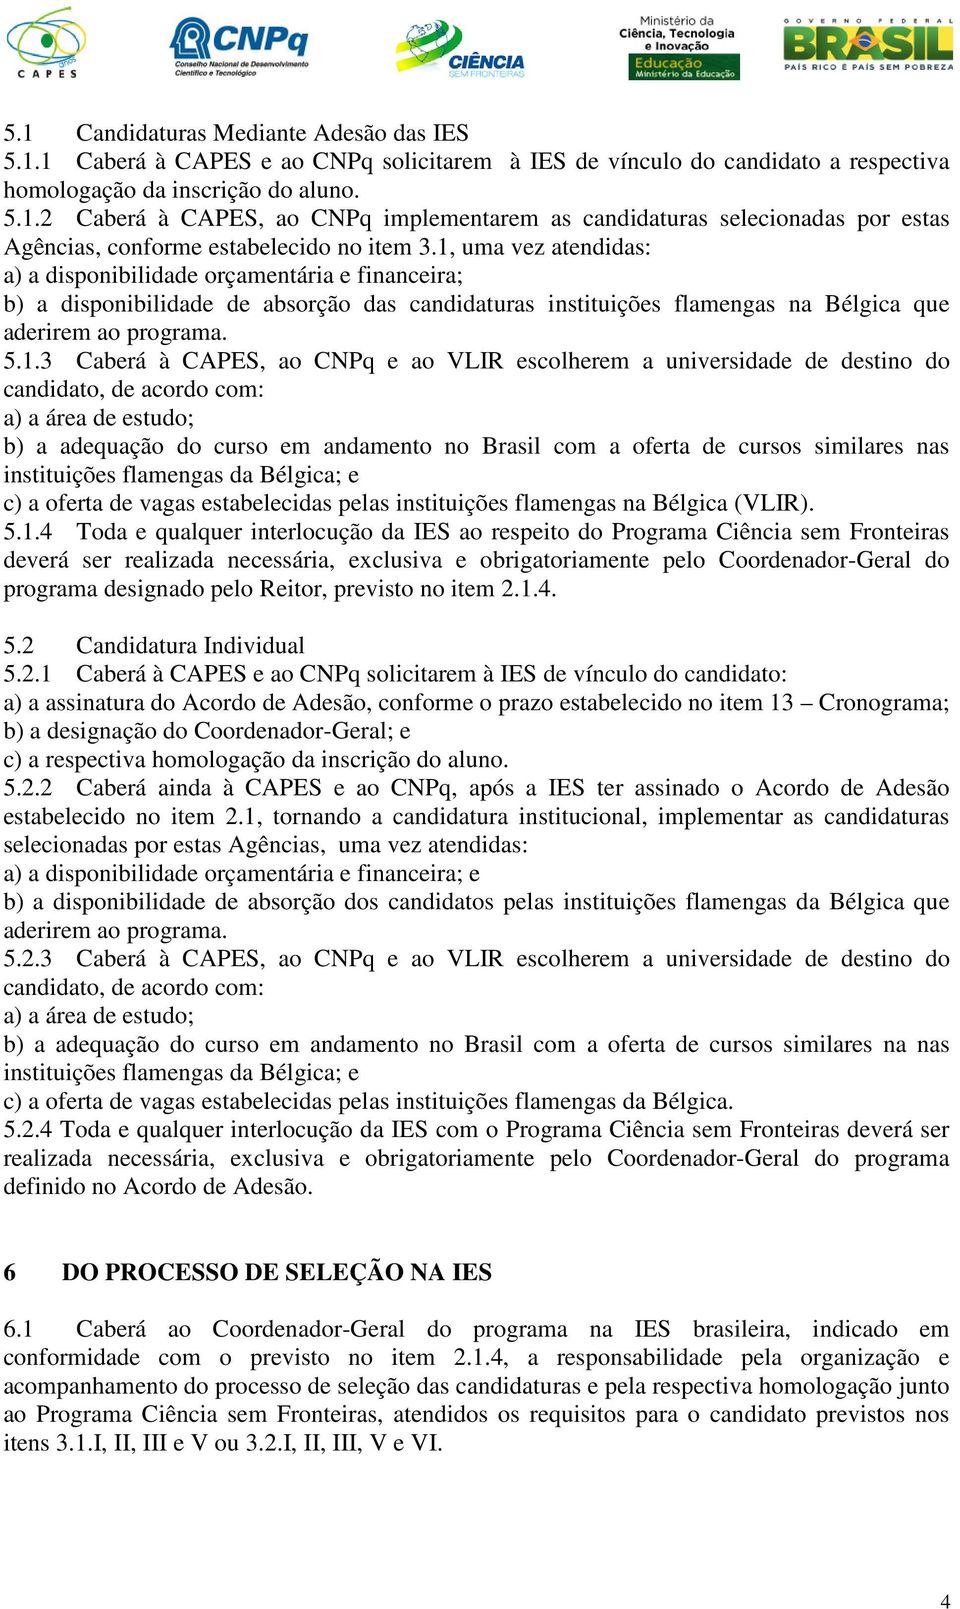 CAPES, ao CNPq e ao VLIR escolherem a universidade de destino do candidato, de acordo com: a) a área de estudo; b) a adequação do curso em andamento no Brasil com a oferta de cursos similares nas